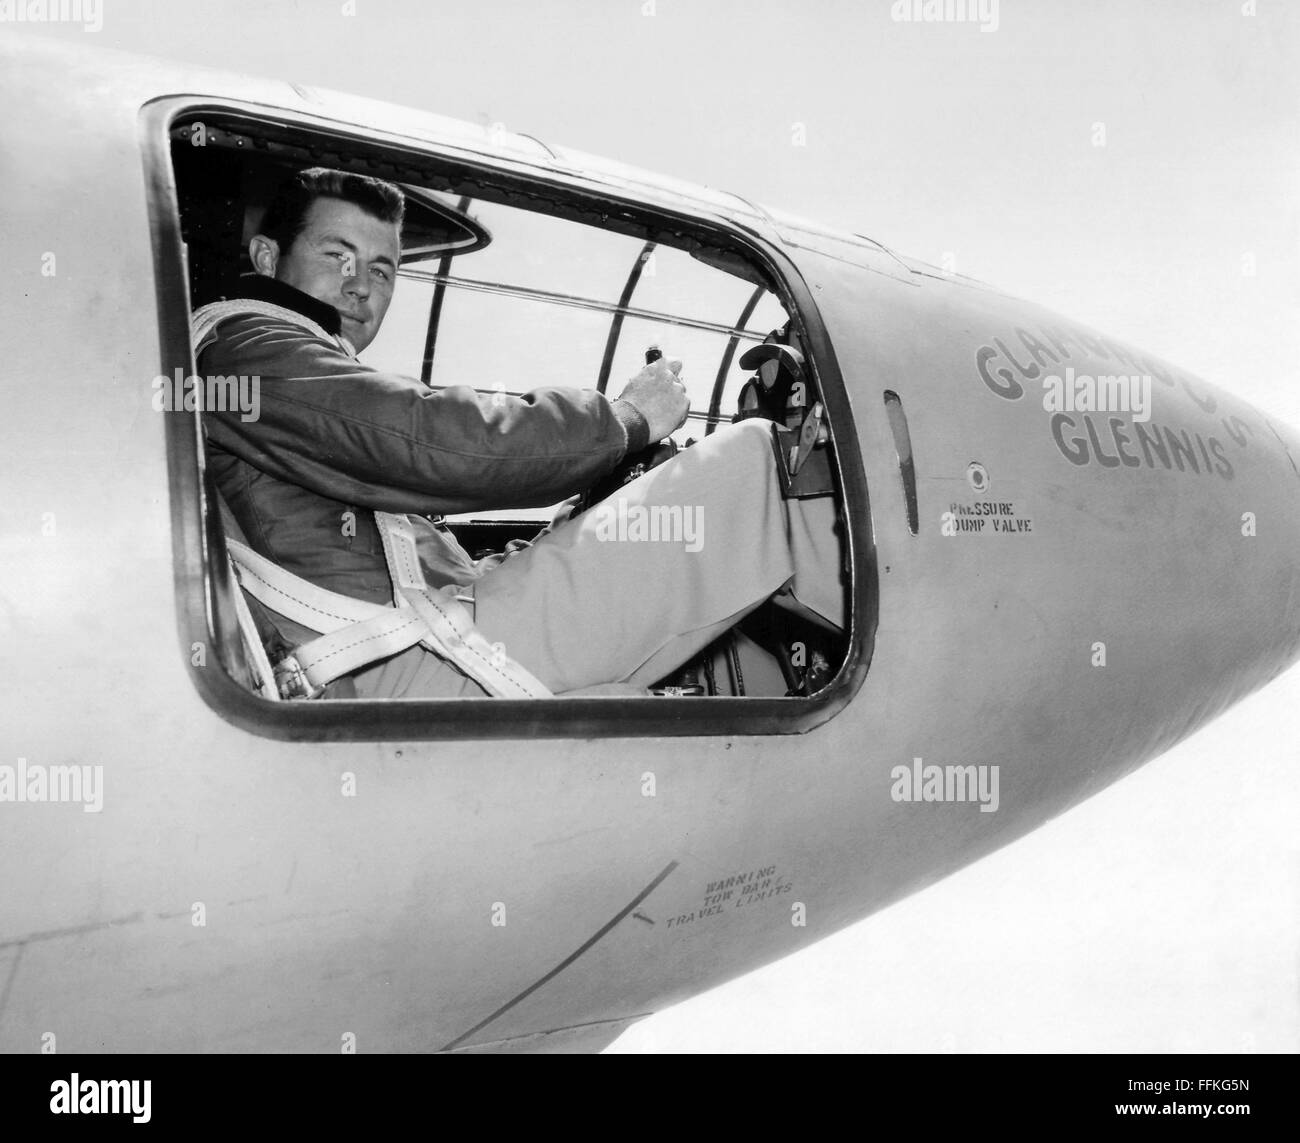 Chuck Yeager. Prueba piloto de la Fuerza Aérea estadounidense Chuck Yeager en la cabina del Bell X-1 "glamoroso Glennis' en el que se rompió la barrera del sonido. Foto c.1947 por USAF Foto de stock